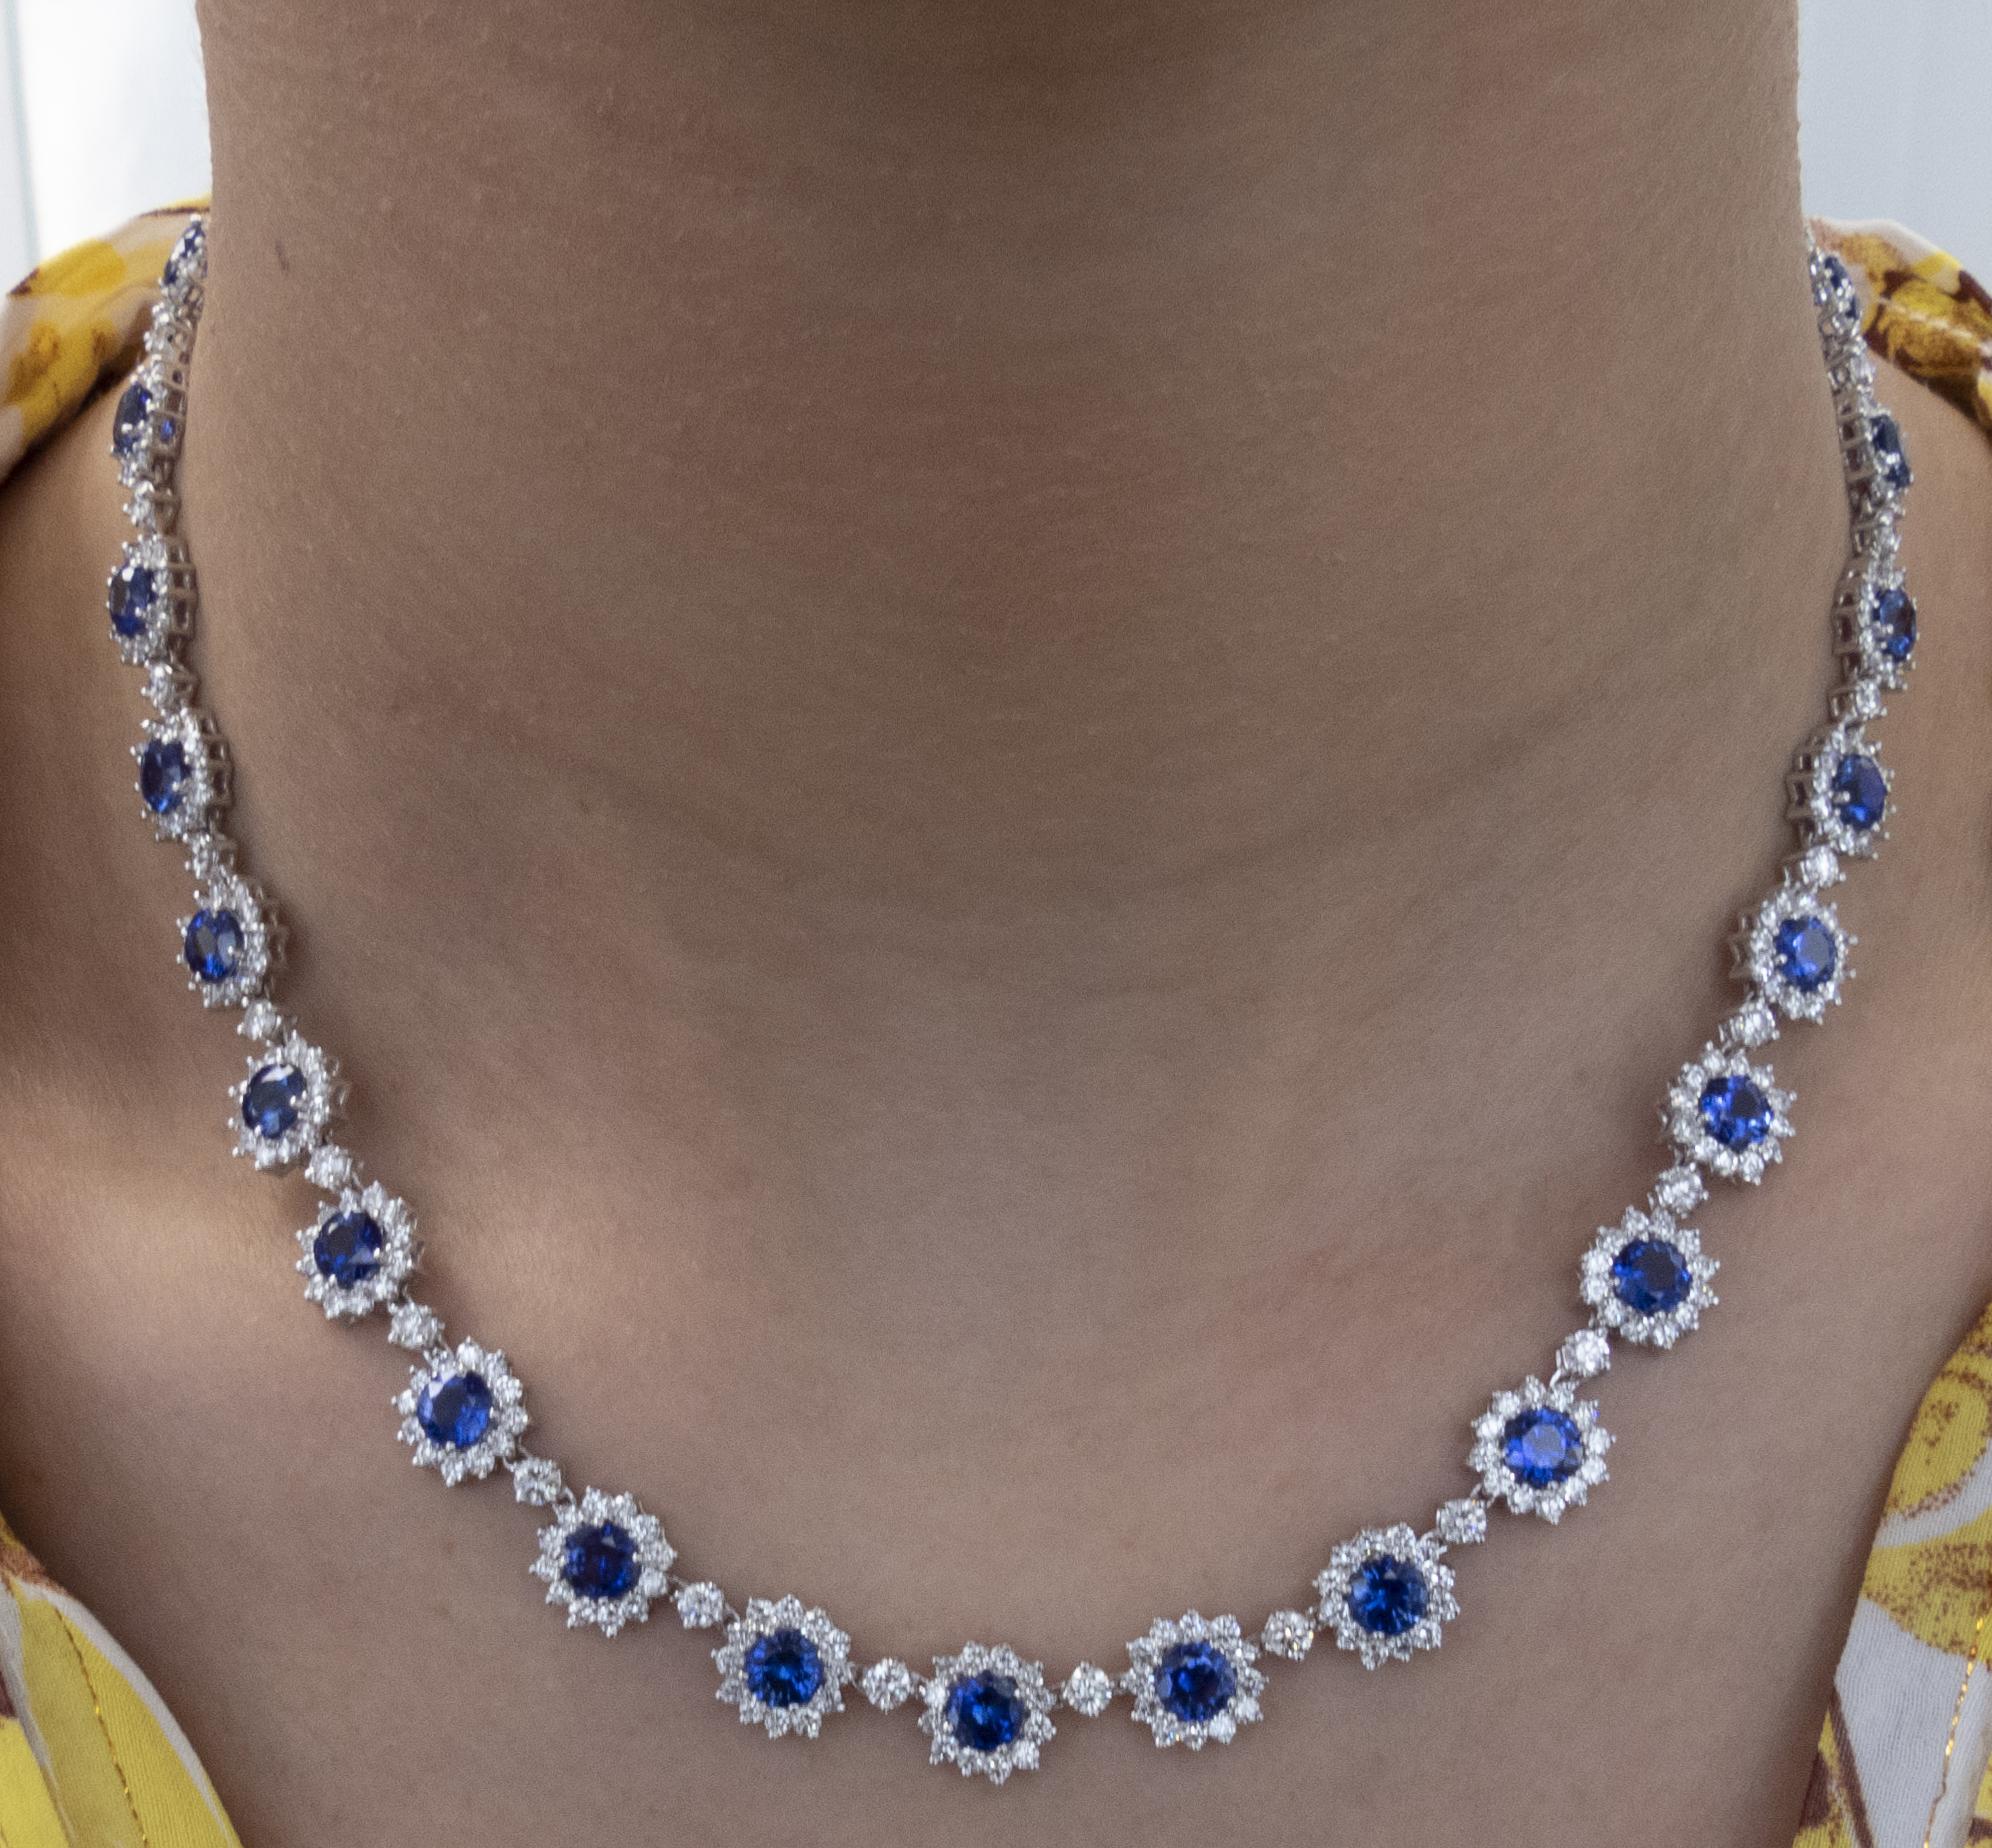 Sensationelle Diamant- und Saphir-Halskette aus 18 Karat Weißgold mit blauen Saphiren und weißen Diamanten von insgesamt ca. 33,34 Karat. Dieses außergewöhnliche Collier präsentiert 416 runde Diamanten im Brillantschliff mit einem Gesamtgewicht von